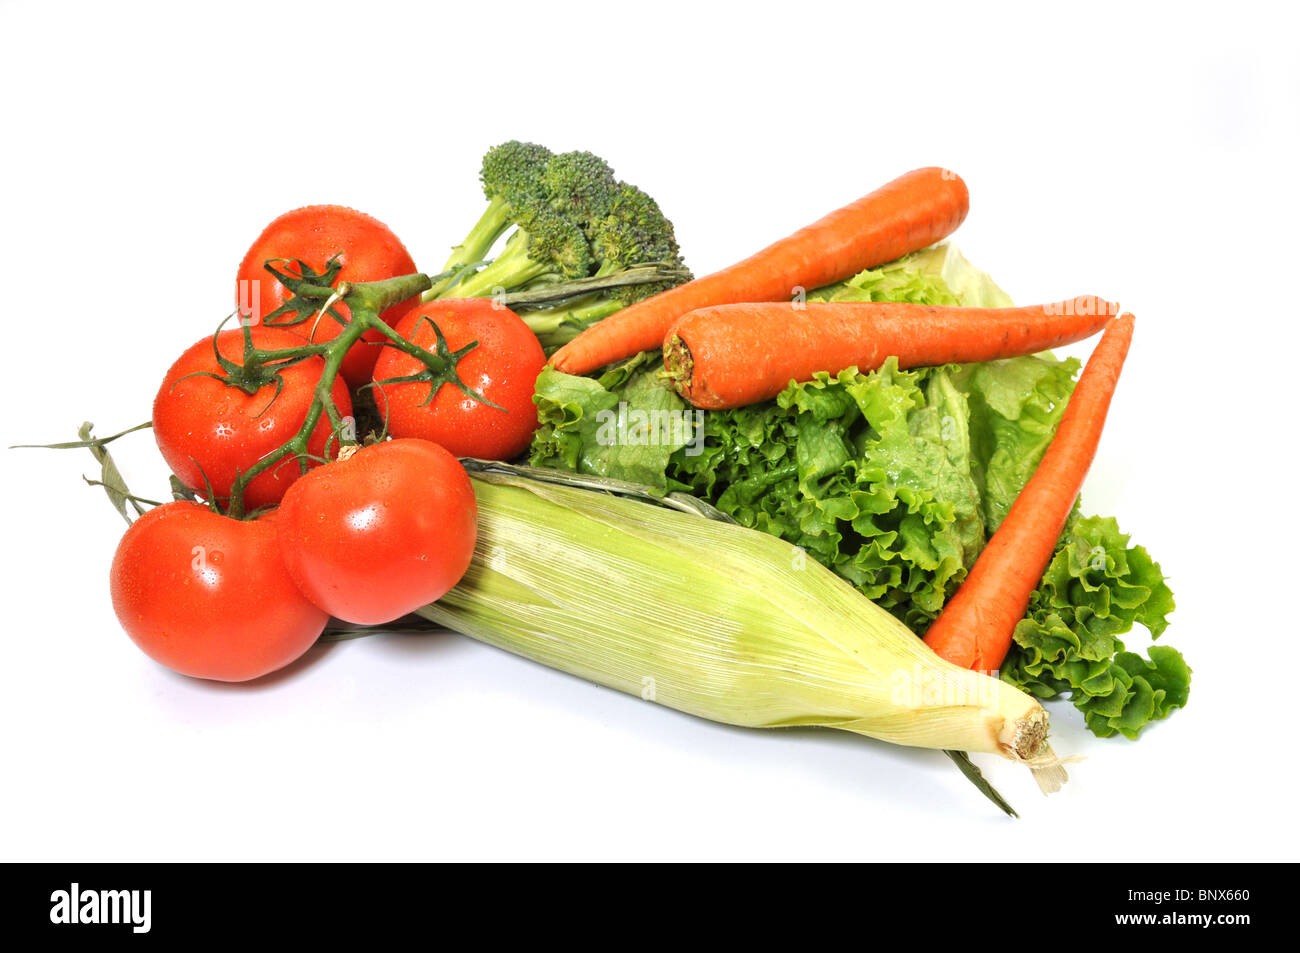 A foglia verde lattuga, pomodori, broccoli, carote e mais isolati su sfondo bianco. Foto Stock